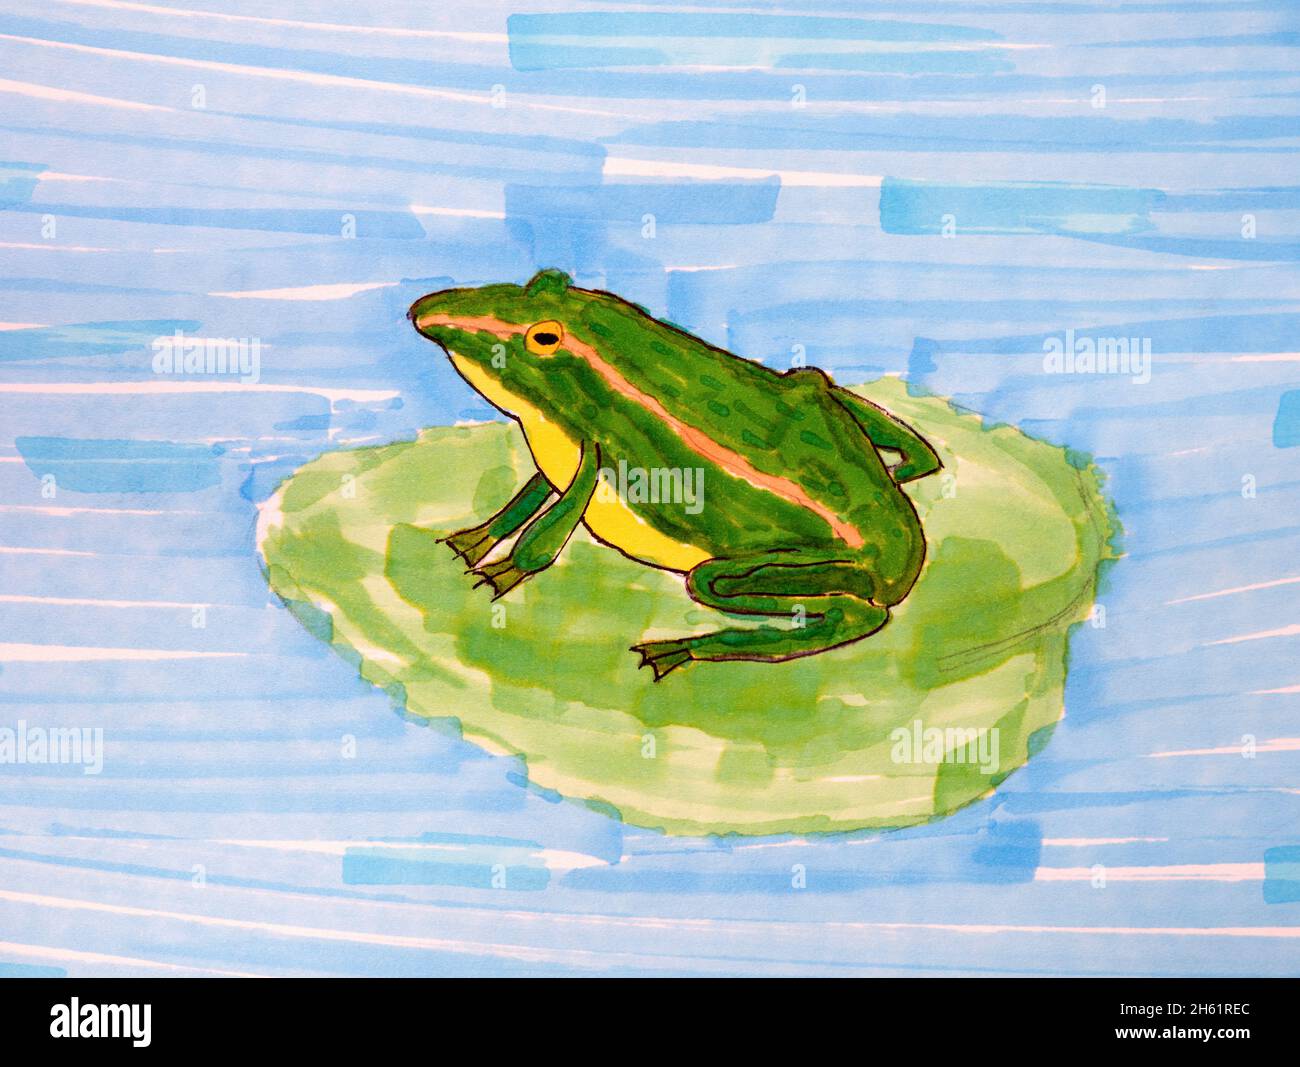 Une grenouille verte sur une feuille de nénuphars dans un étang.Dessin manuel d'enfant réalisé par des marqueurs de couleur. Banque D'Images